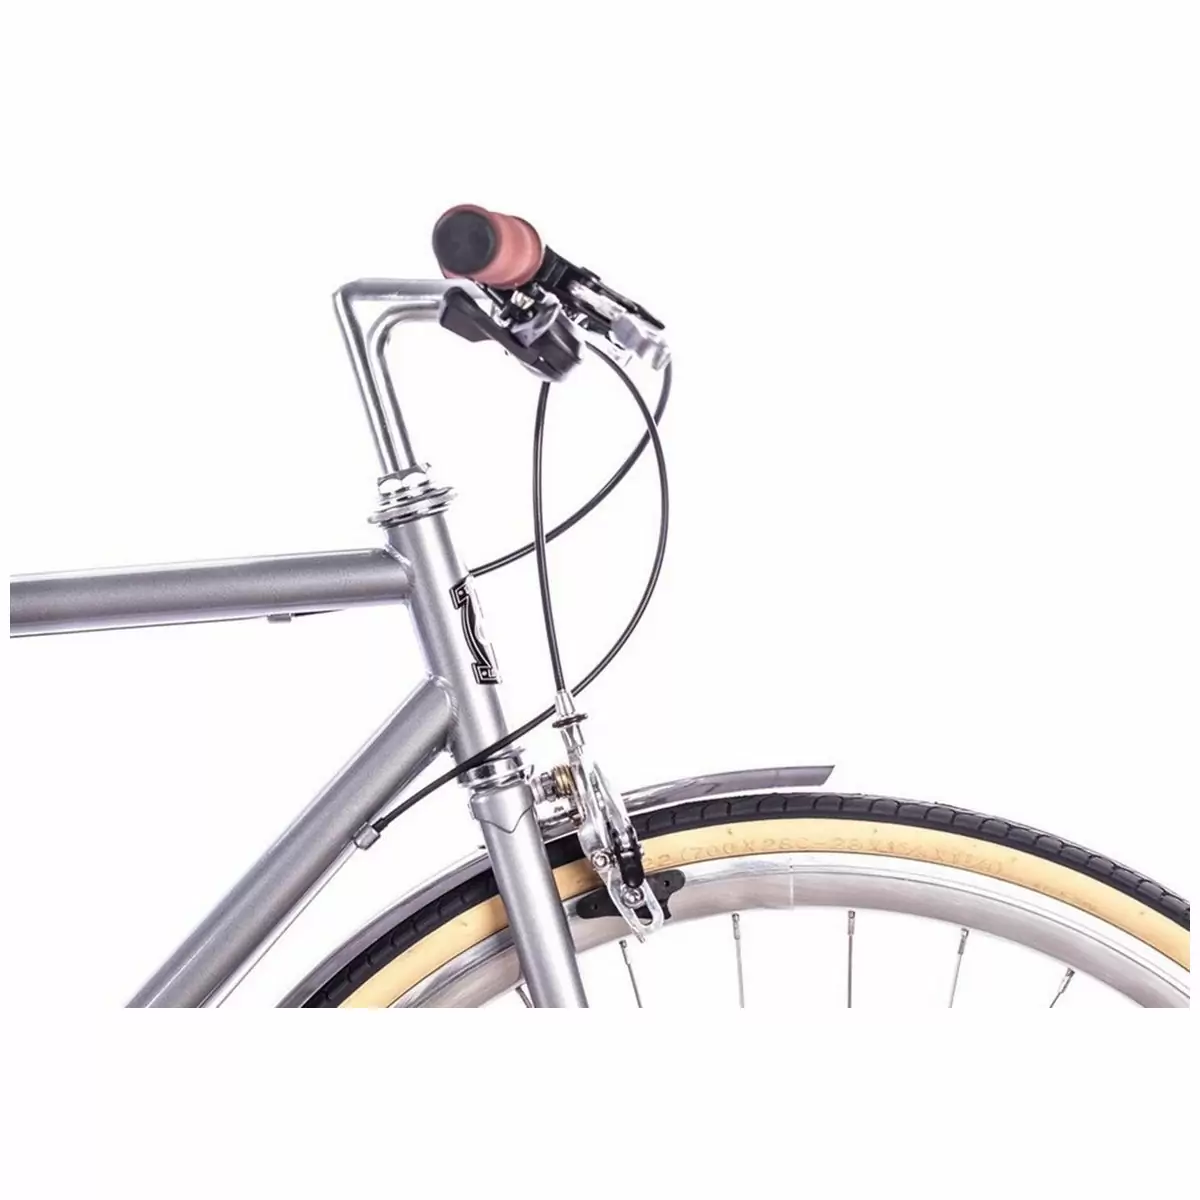 Bicicleta urbana ODYSSEY 8spd Brandford prata média 54cm #3